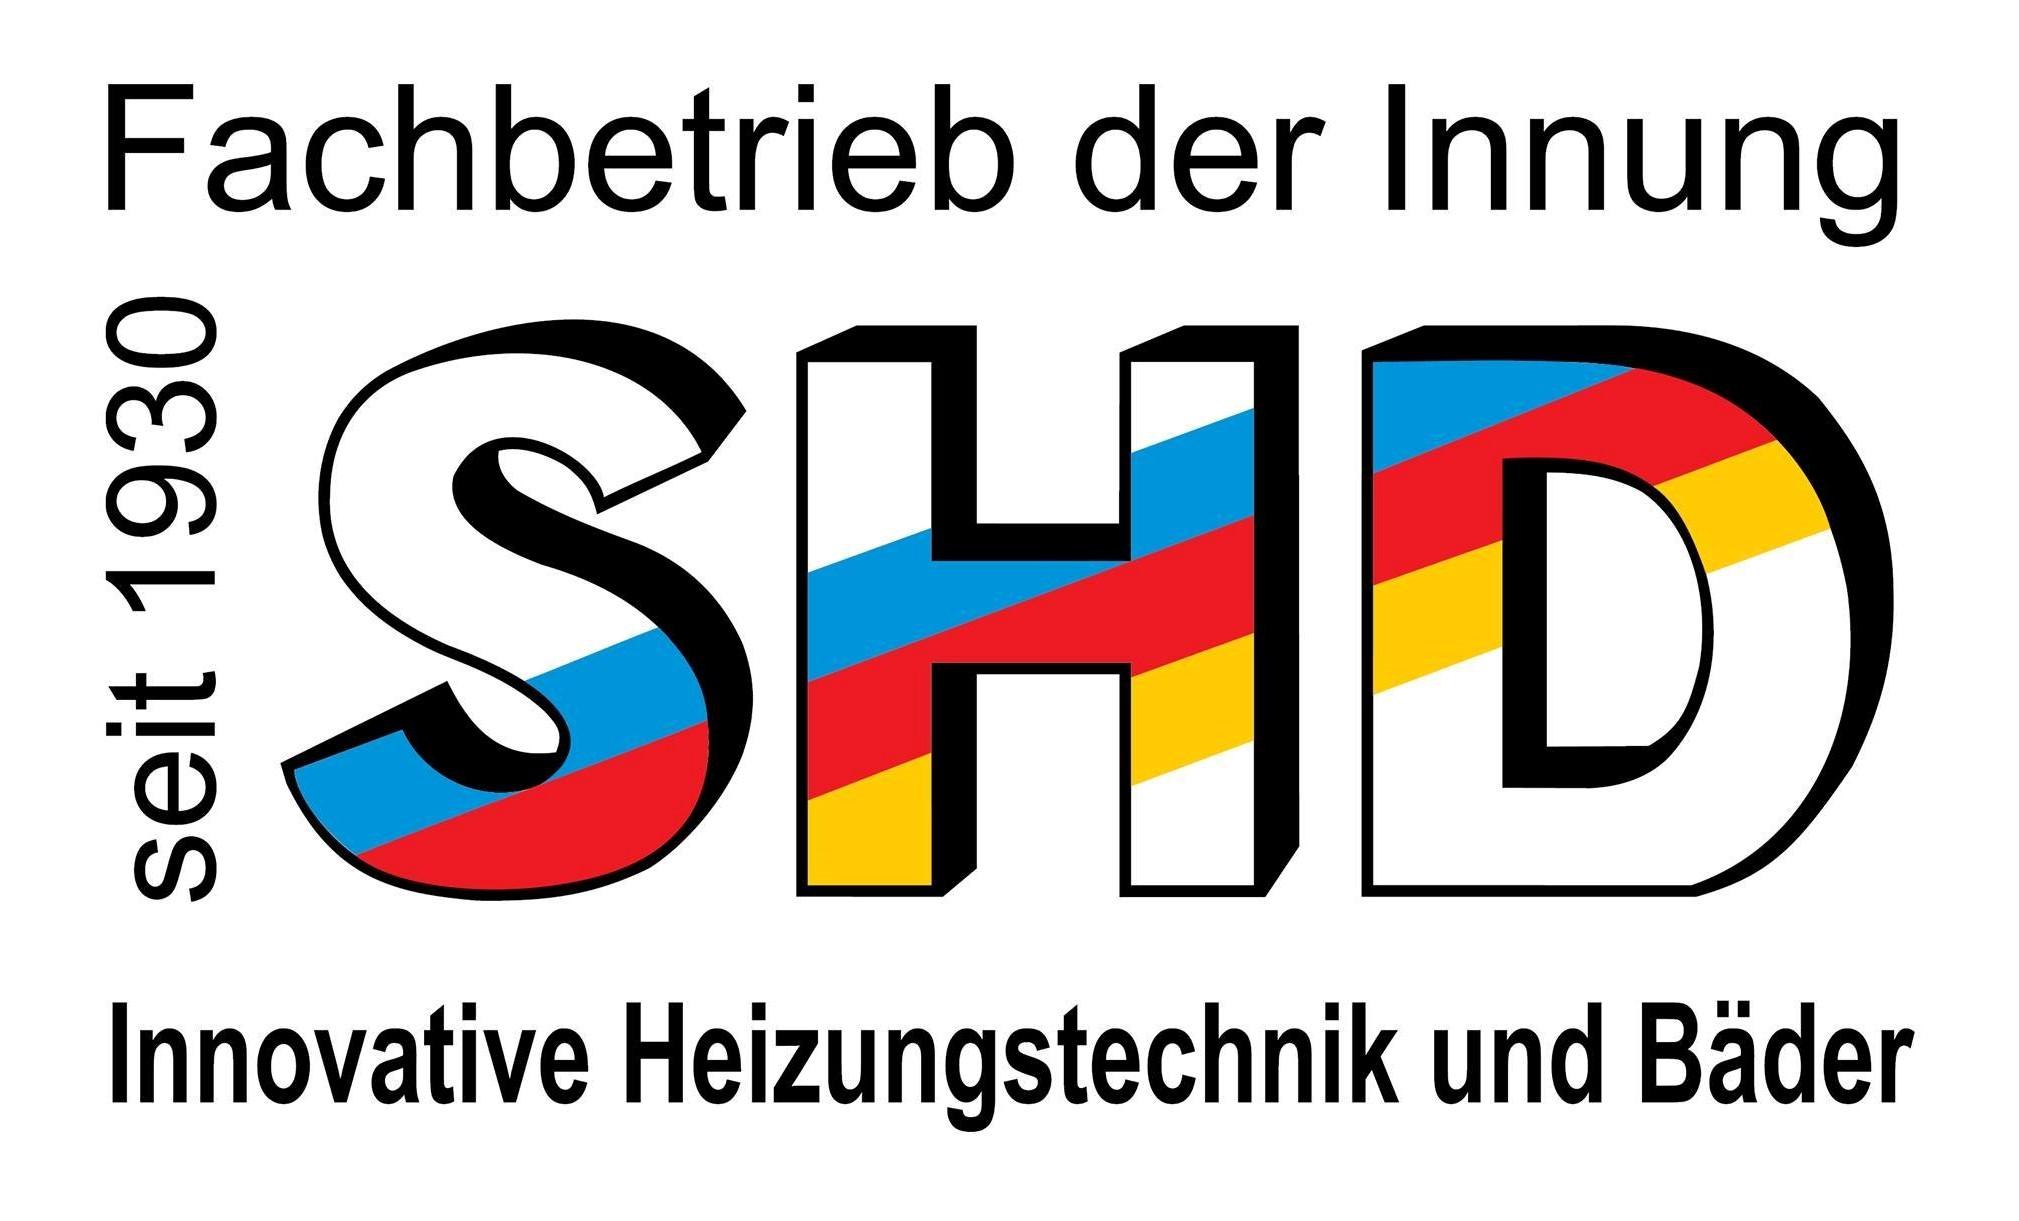 Lars Häßlich SHD - Innovative Heizungstechnik und Bäder in Dohna